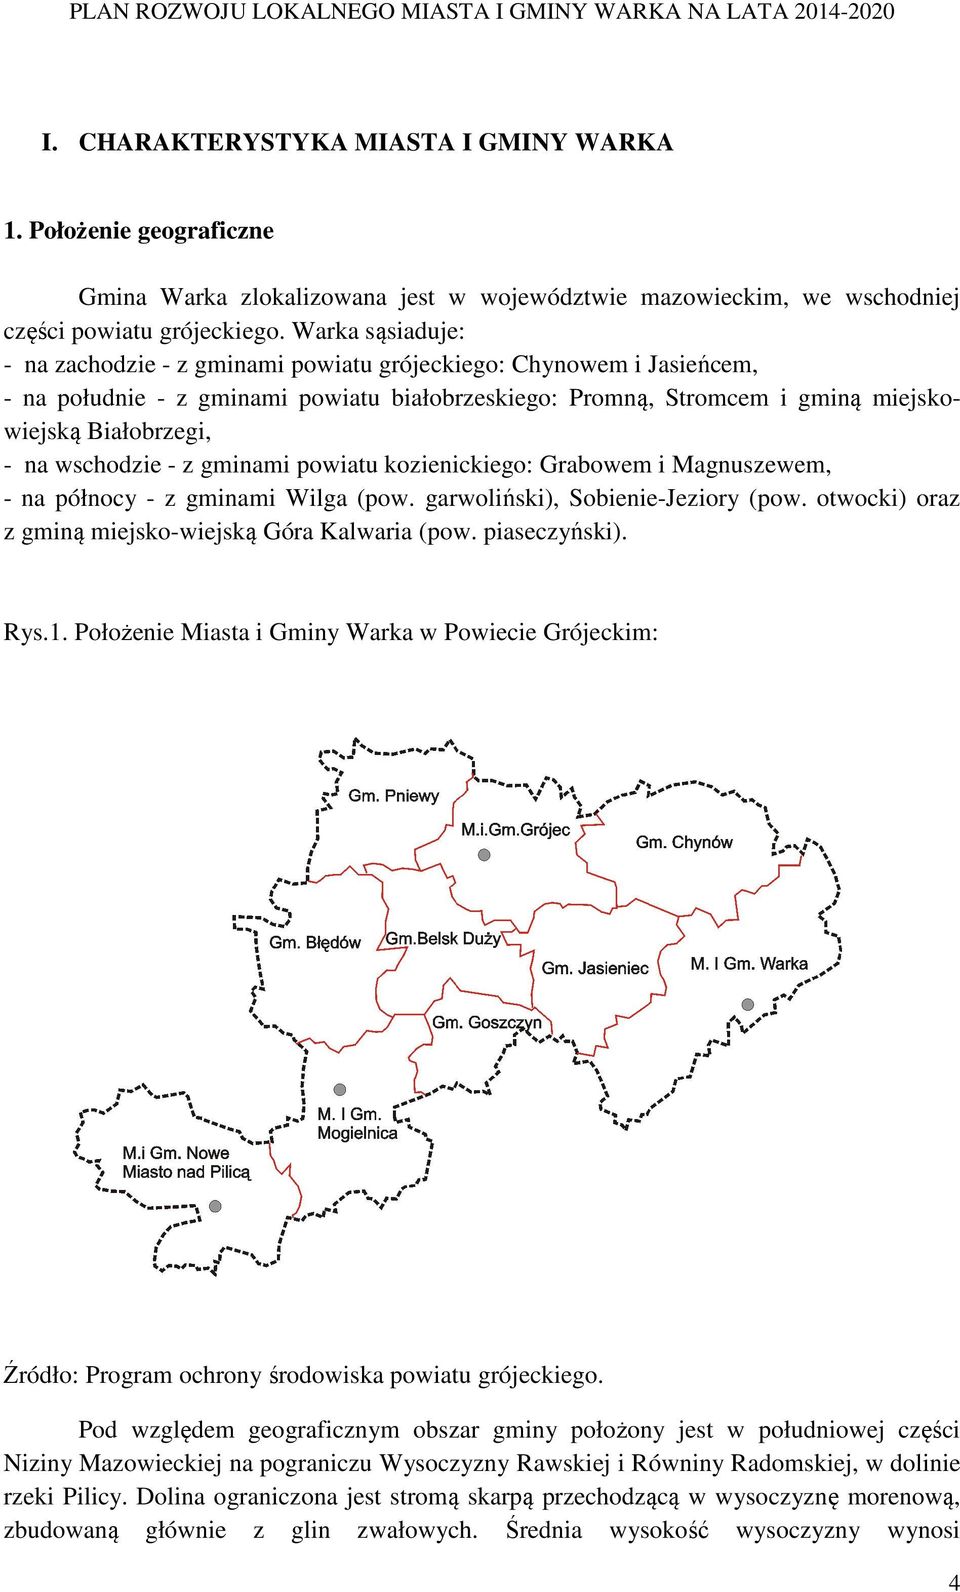 wschodzie - z gminami powiatu kozienickiego: Grabowem i Magnuszewem, - na północy - z gminami Wilga (pow. garwoliński), Sobienie-Jeziory (pow. otwocki) oraz z gminą miejsko-wiejską Góra Kalwaria (pow.